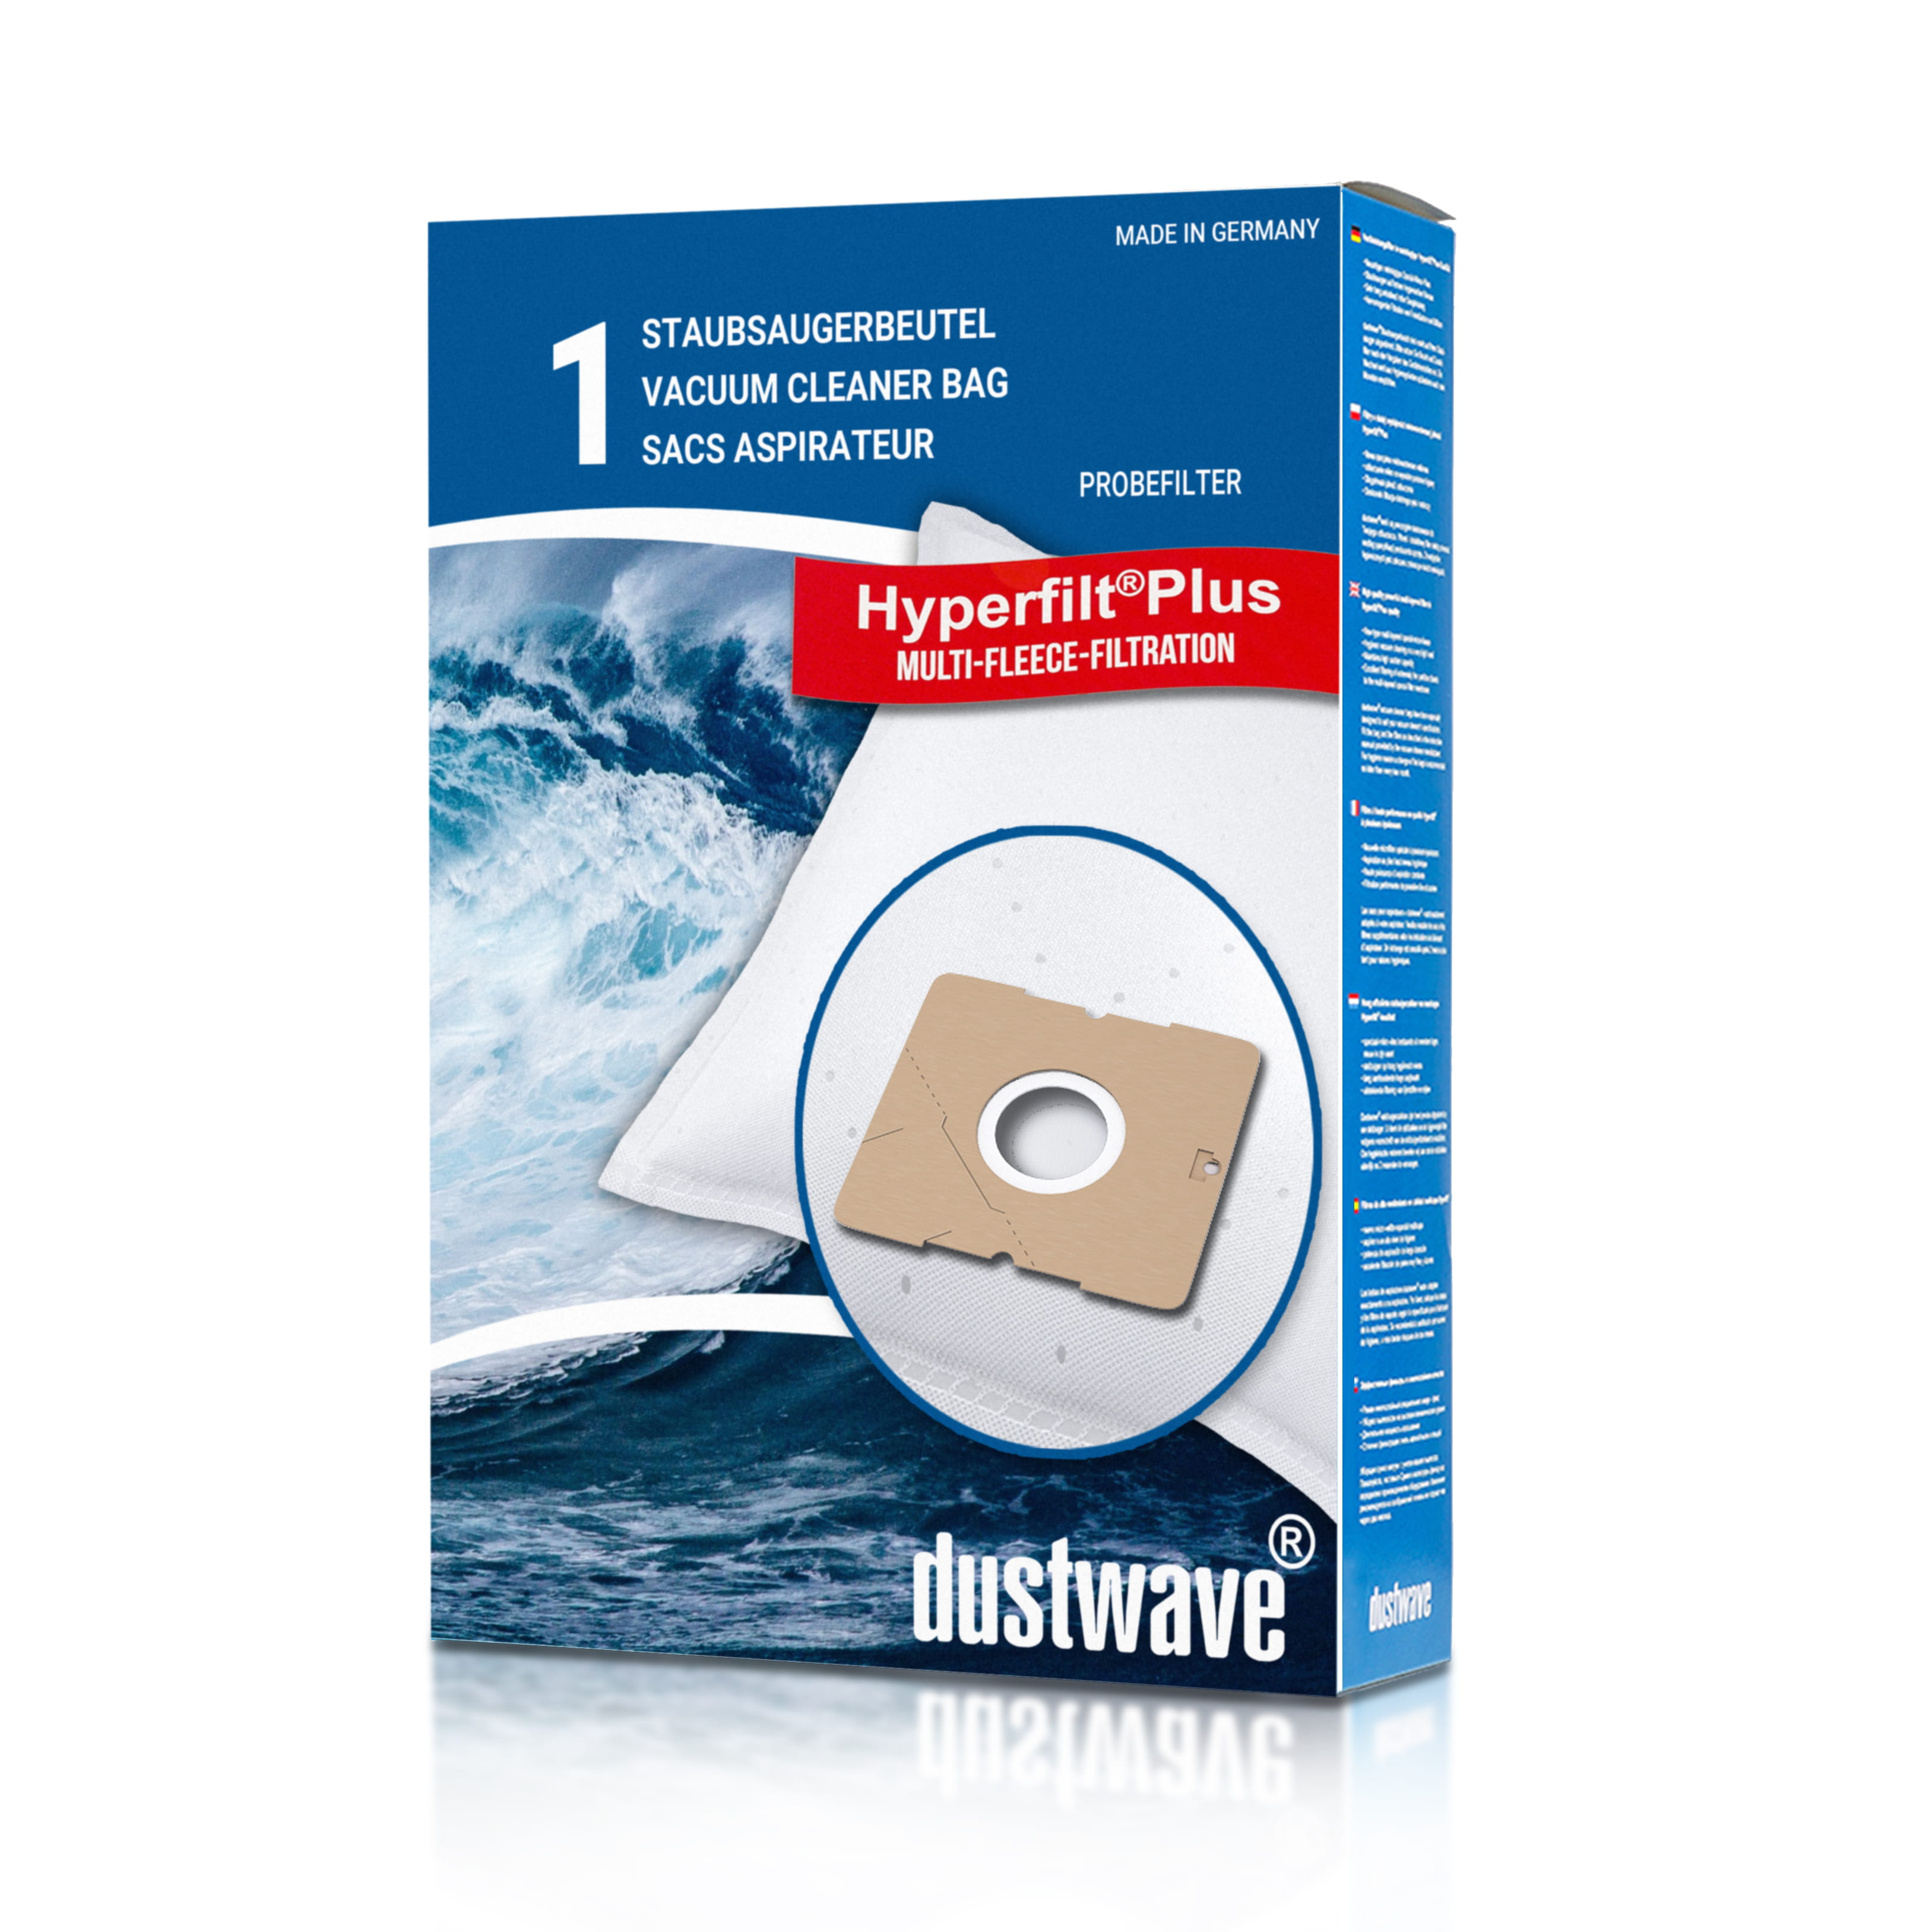 Dustwave® 1 Staubsaugerbeutel für AEG Smart 360 - hocheffizient mit Hygieneverschluss - Made in Germany